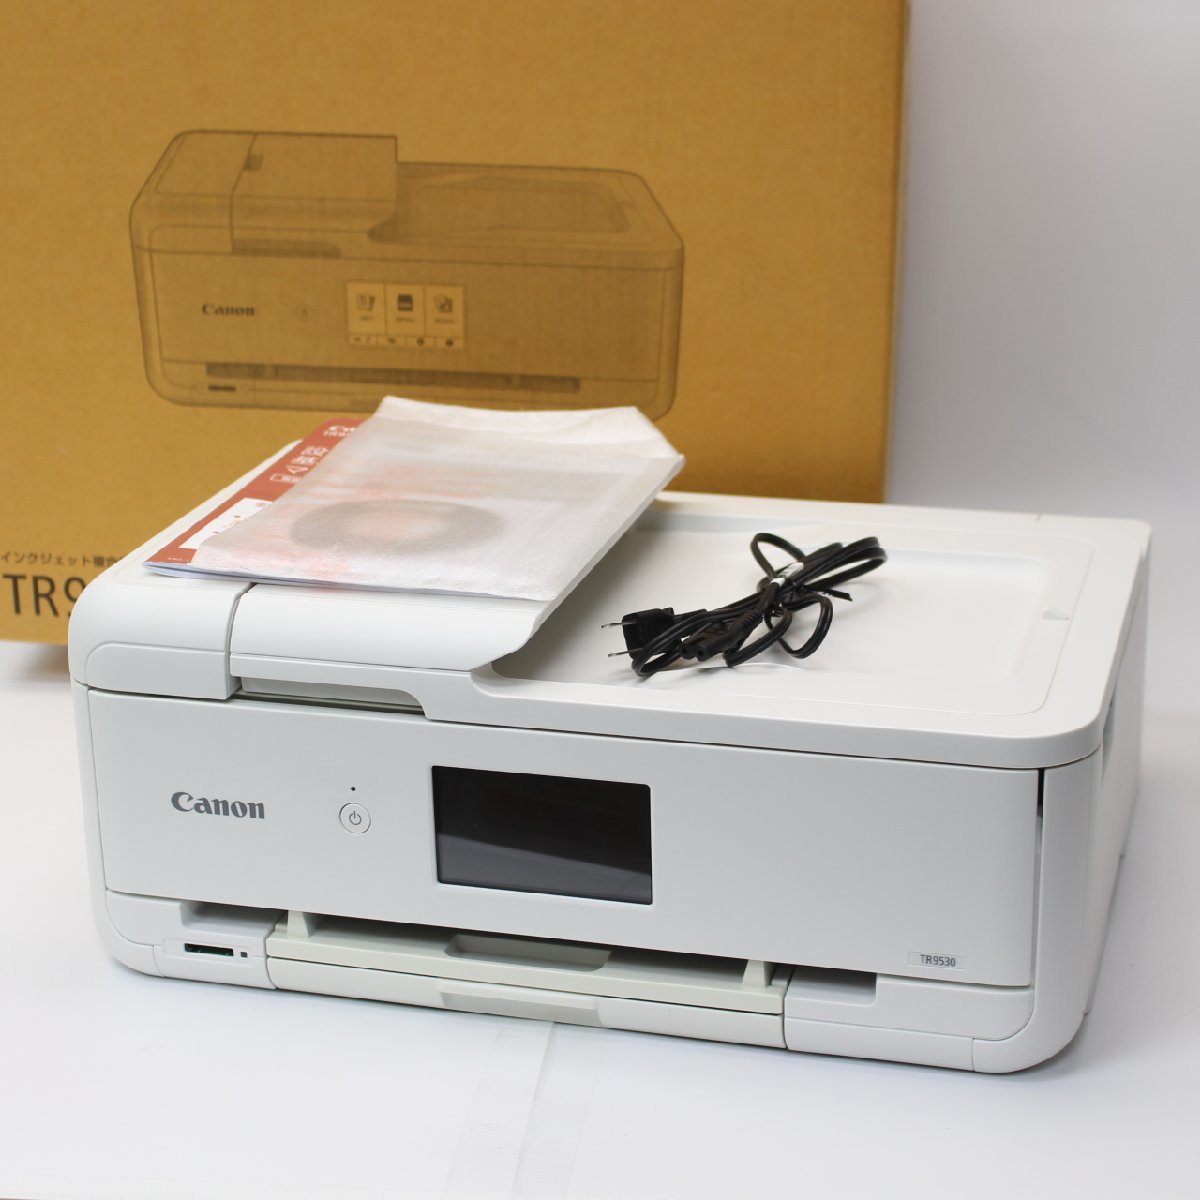 東京都武蔵野市にて キャノン インクジェットプリンター TR9530  を出張買取させて頂きました。